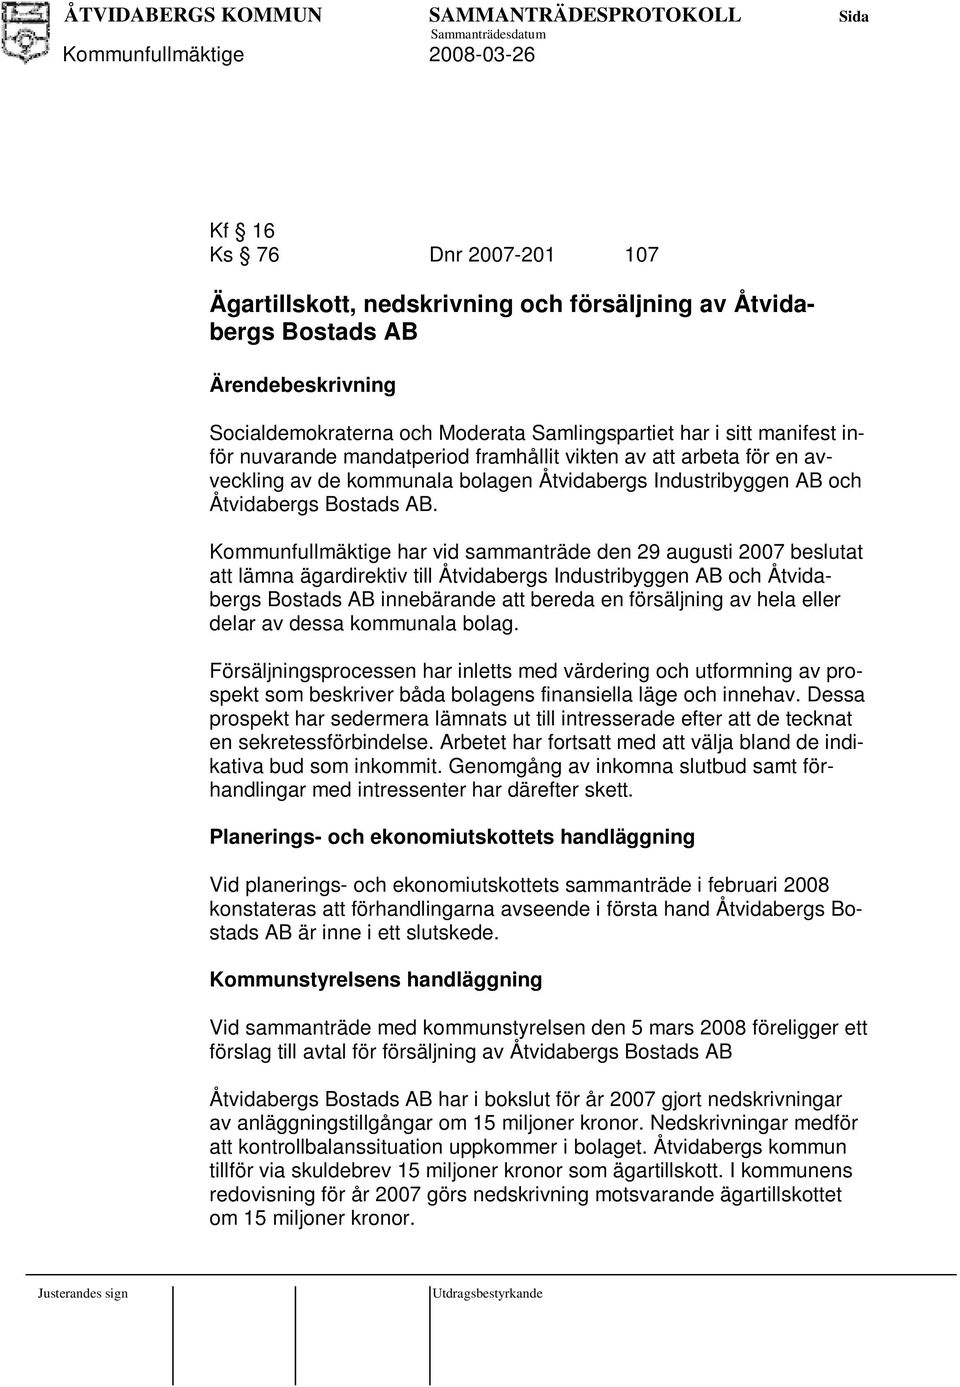 Kommunfullmäktige har vid sammanträde den 29 augusti 2007 beslutat att lämna ägardirektiv till Åtvidabergs Industribyggen AB och Åtvidabergs Bostads AB innebärande att bereda en försäljning av hela